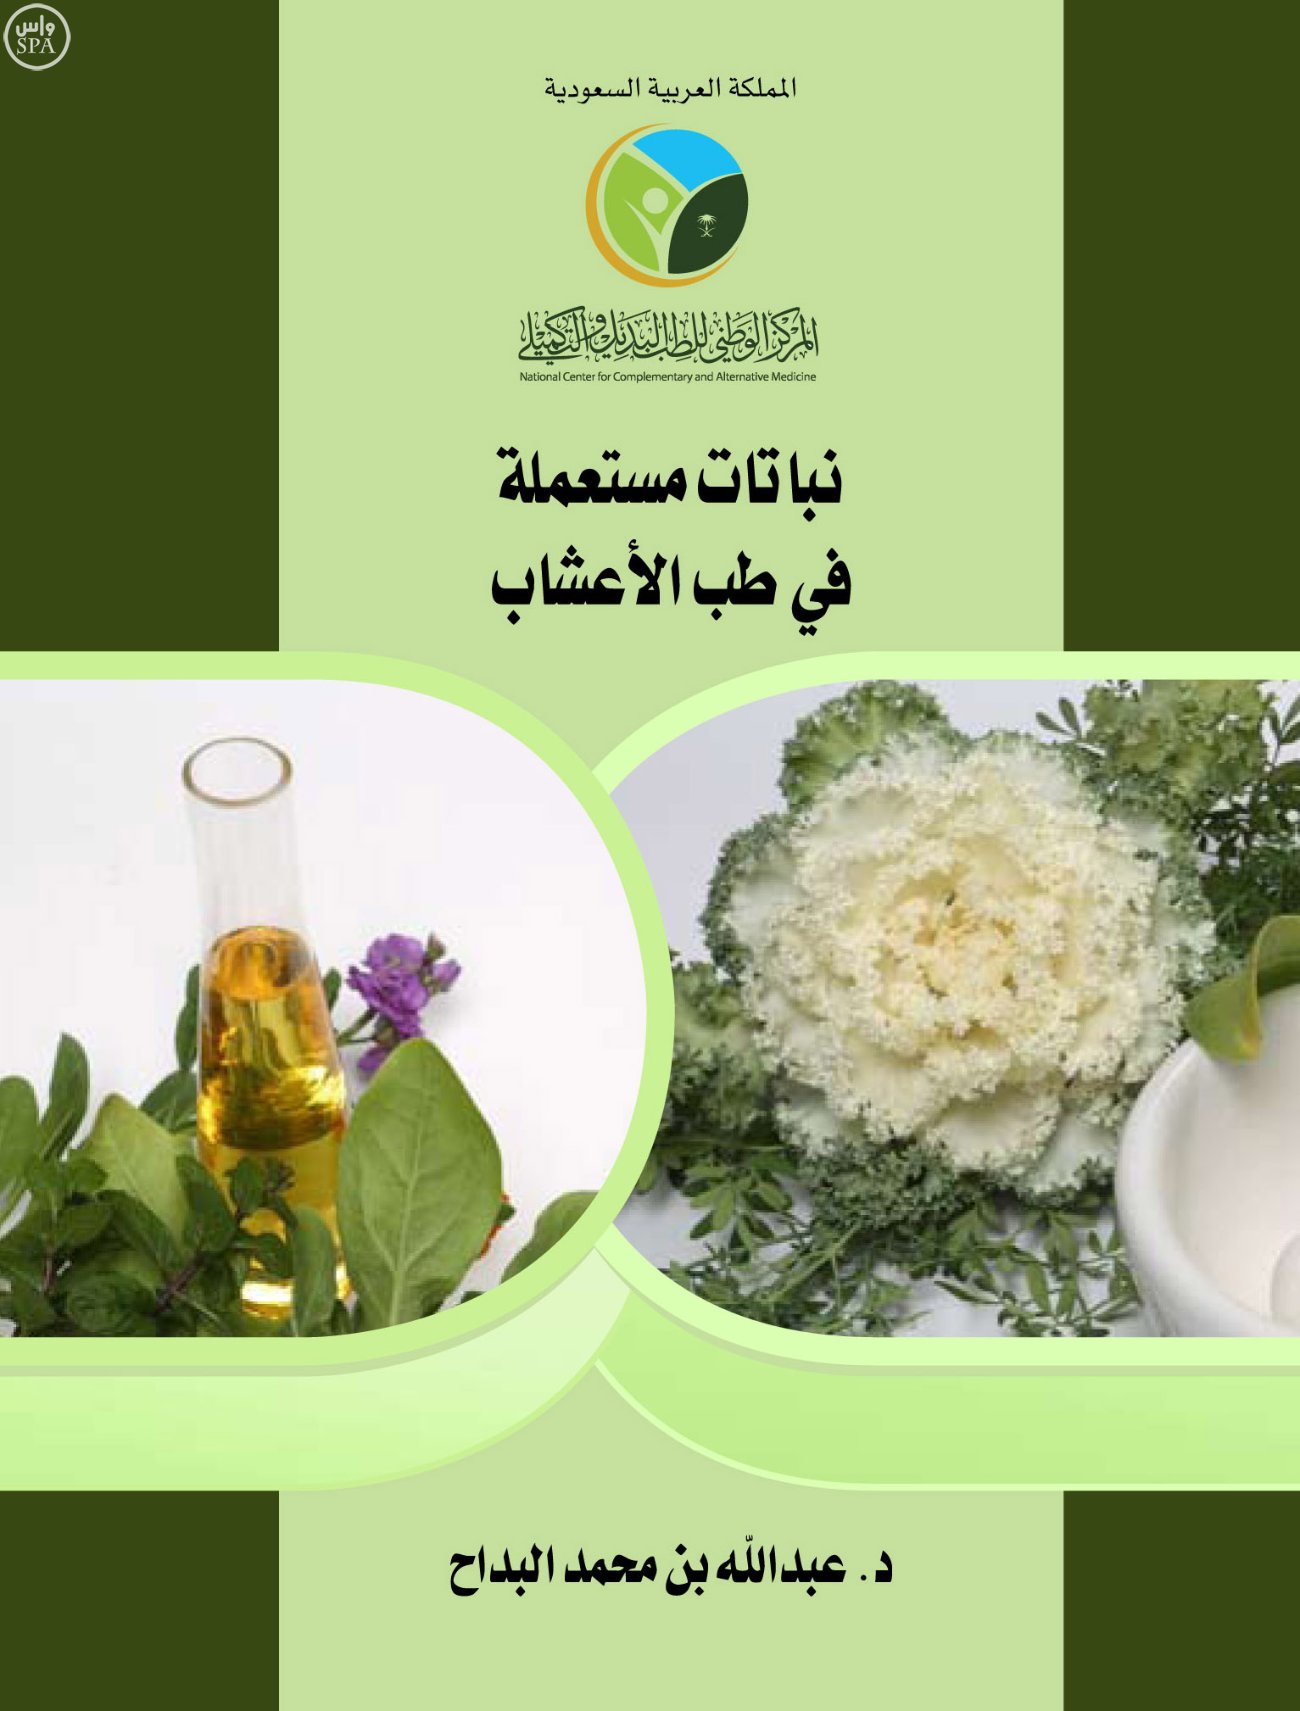 "الطب التكميلي" يصدر كتابًا عن الأعشاب النباتية الطبية مجلة نبض